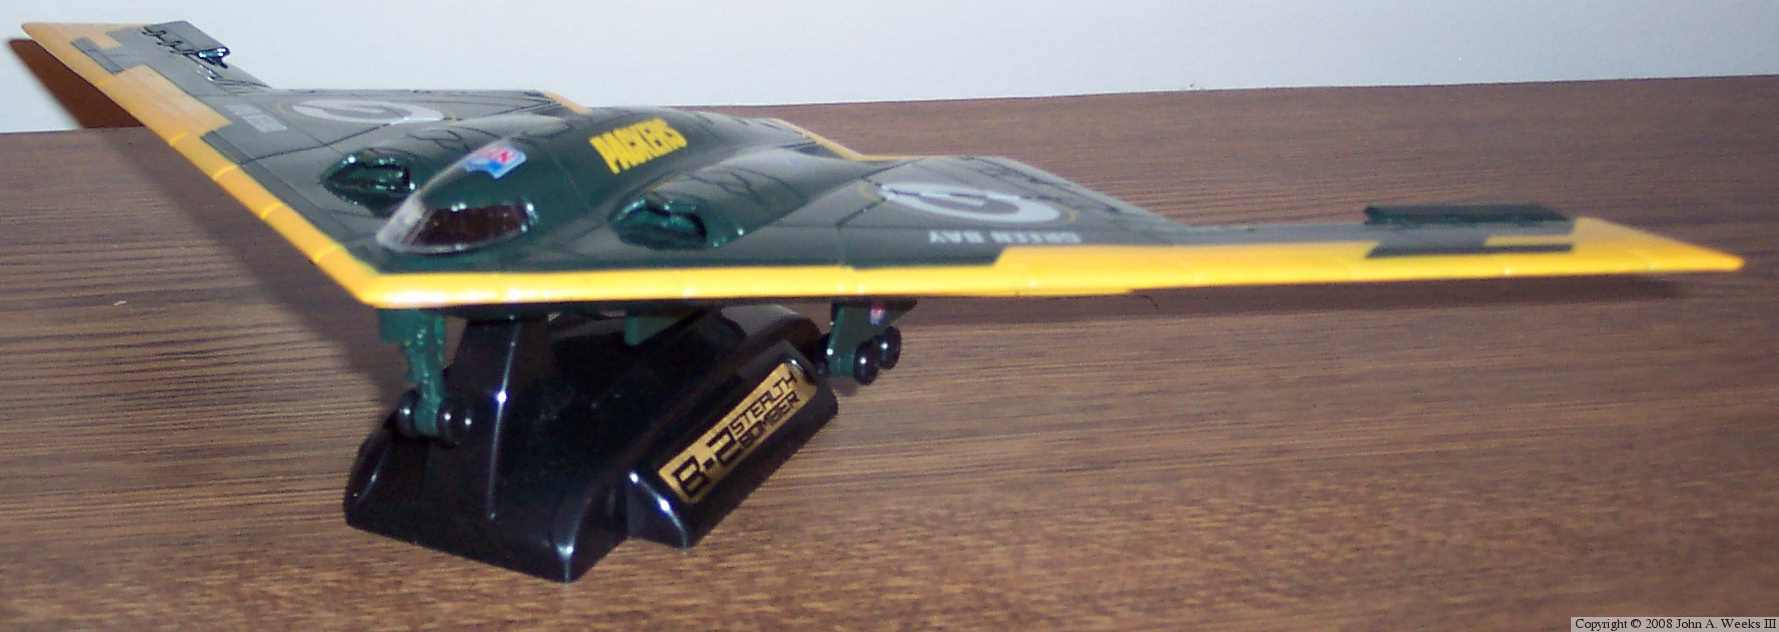 Green Bay Packer Stealth Bomber